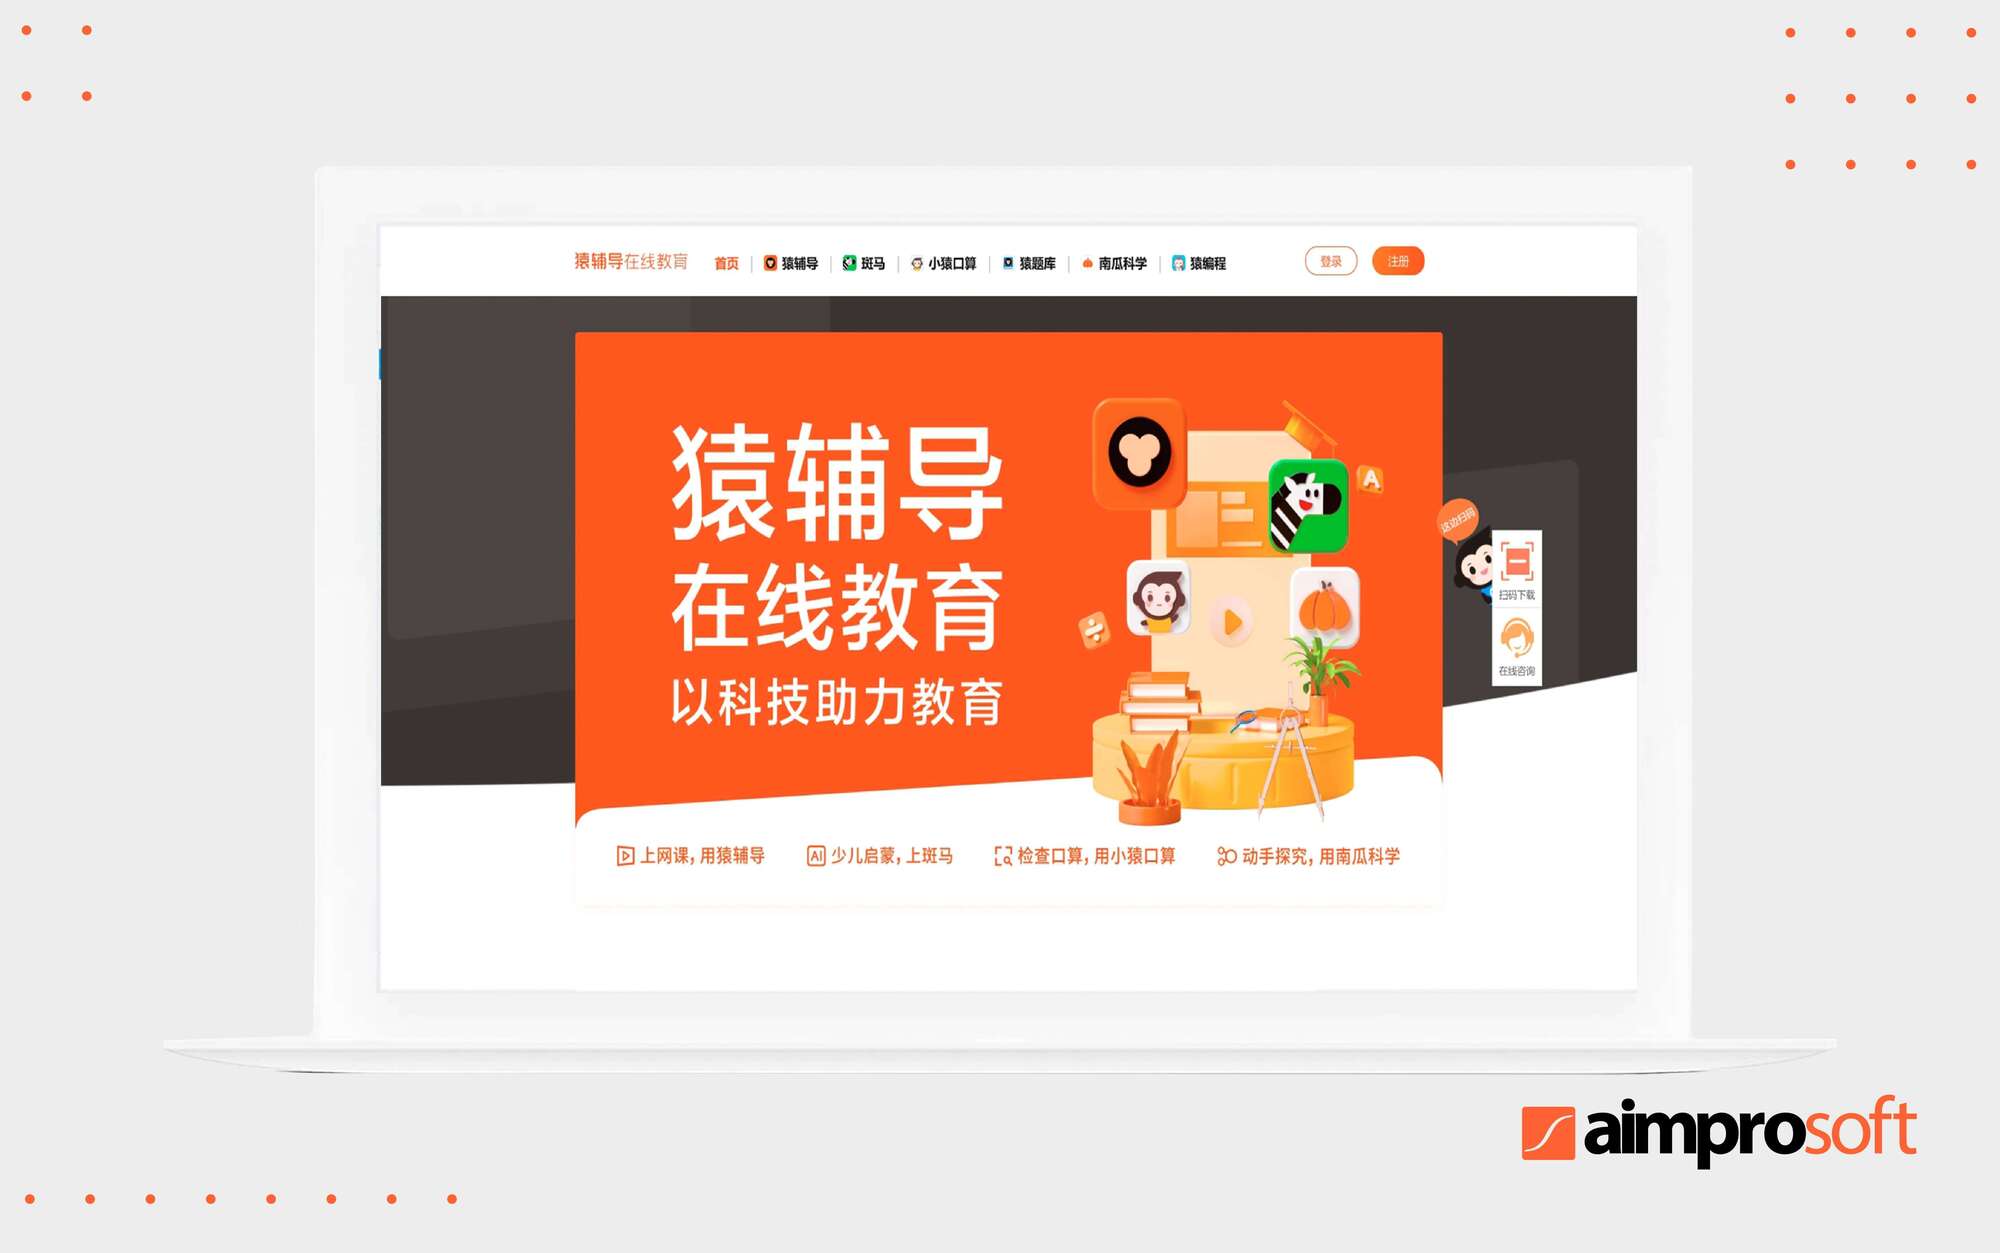 Yuanfudao is a Chinese edtech startup